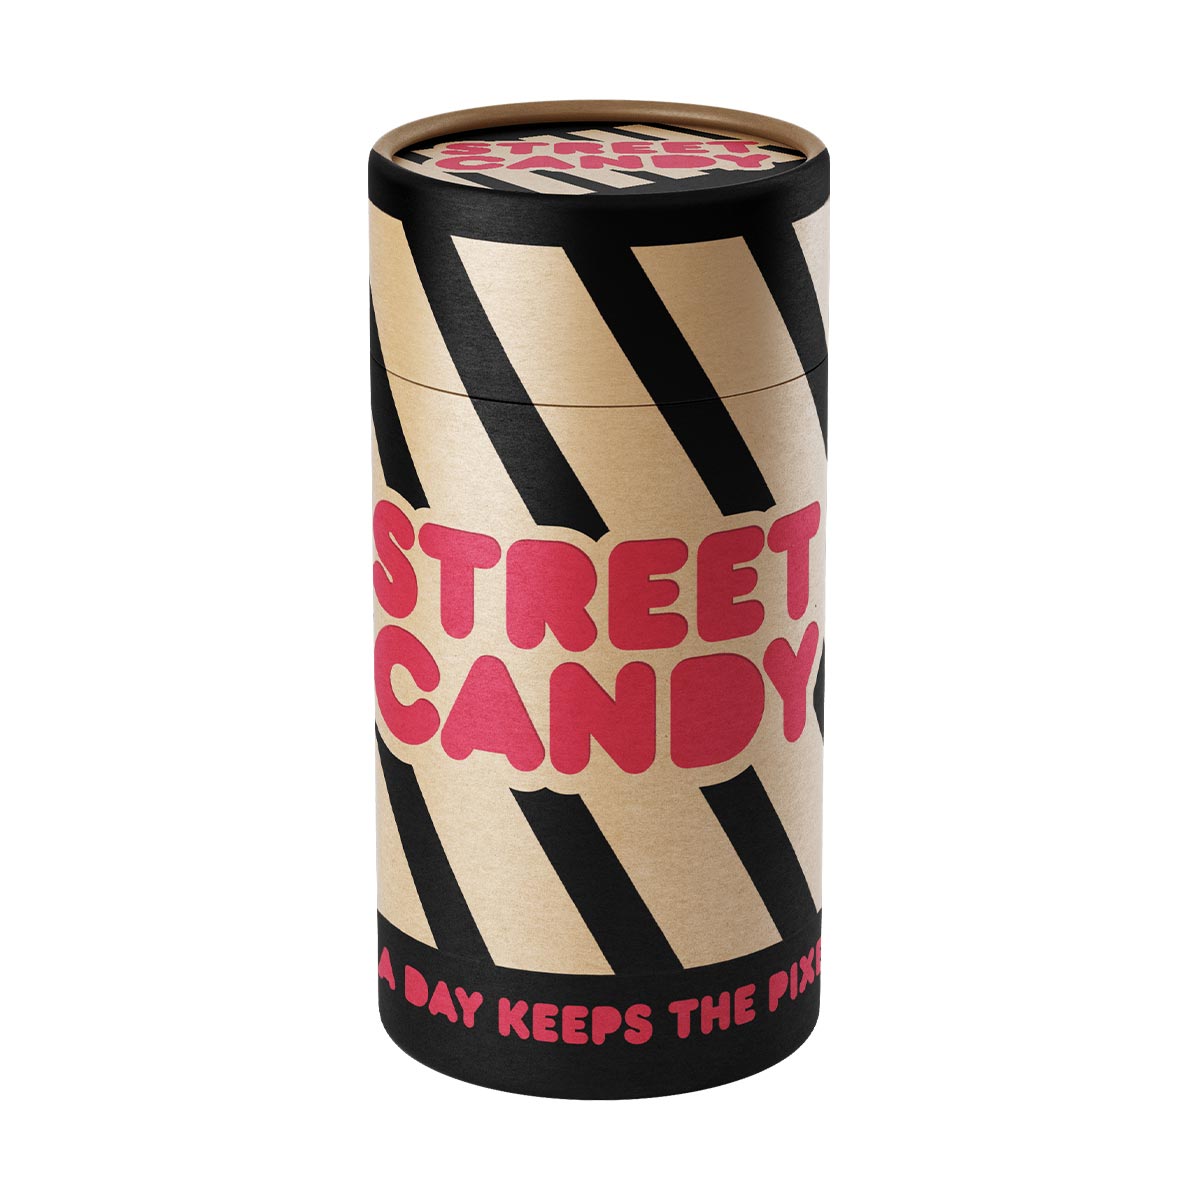 Street Candy 400 135-36 B&W Film (One Roll)